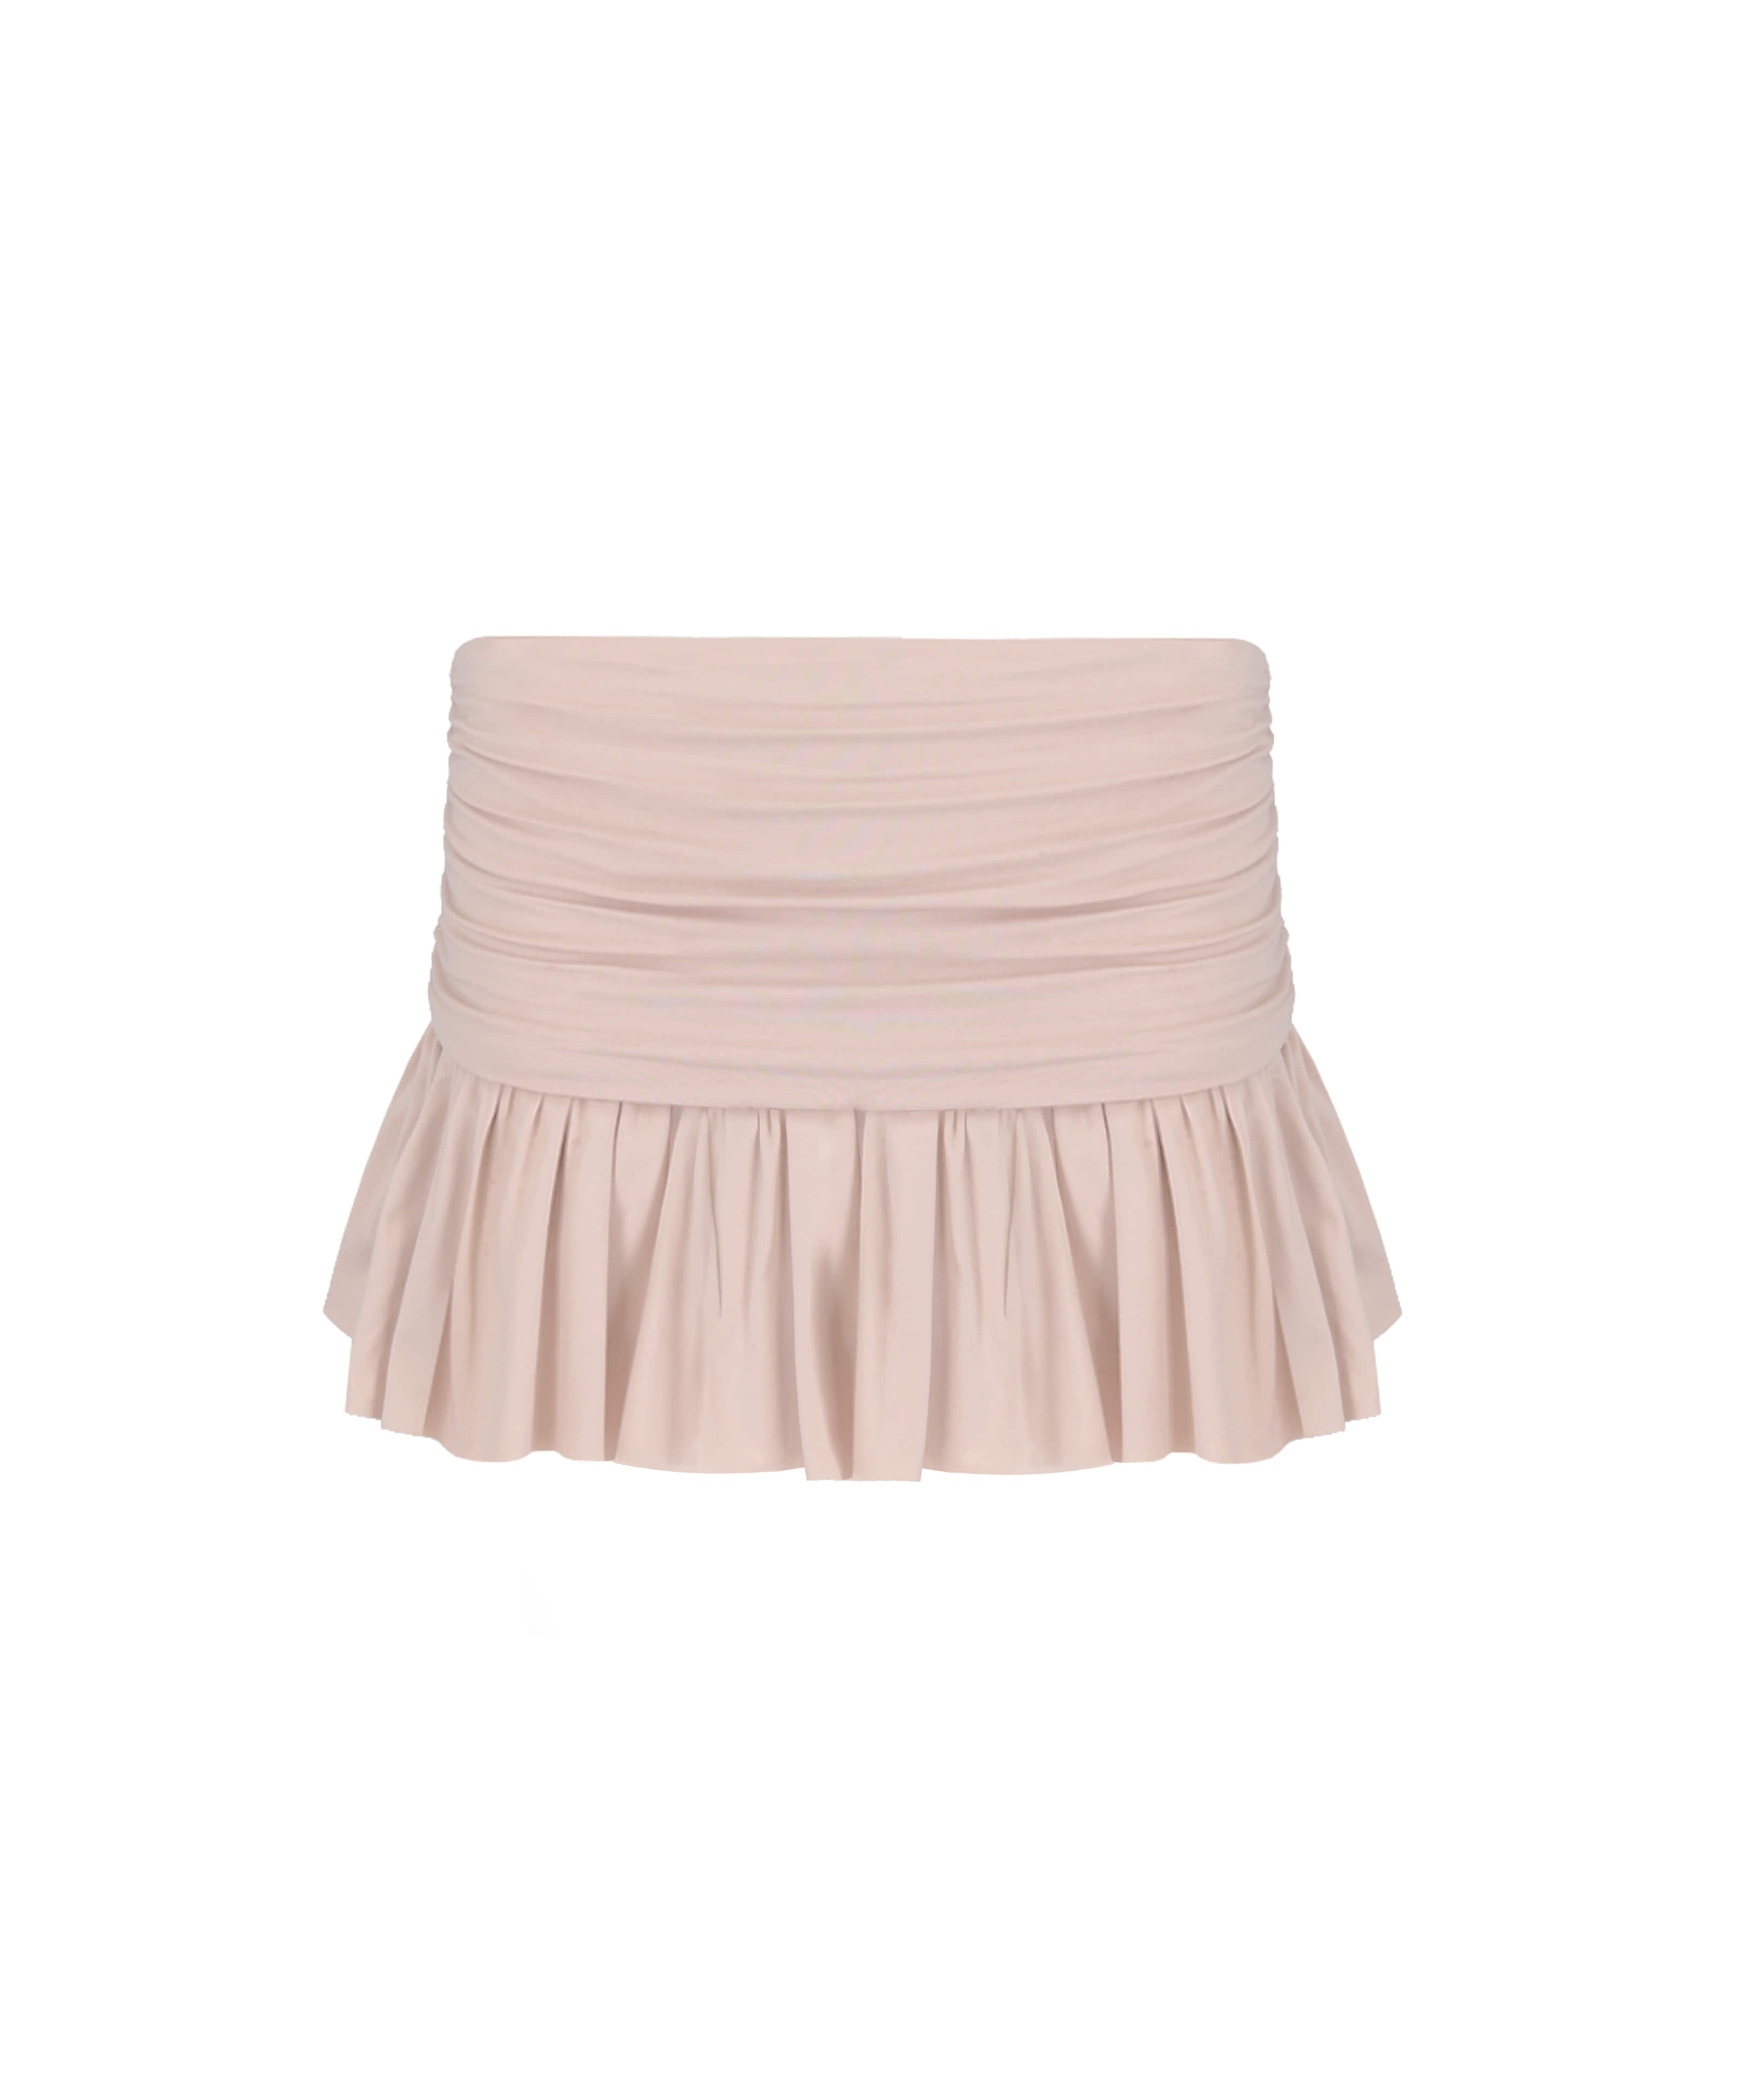 [Made] Beloved shirring skirt